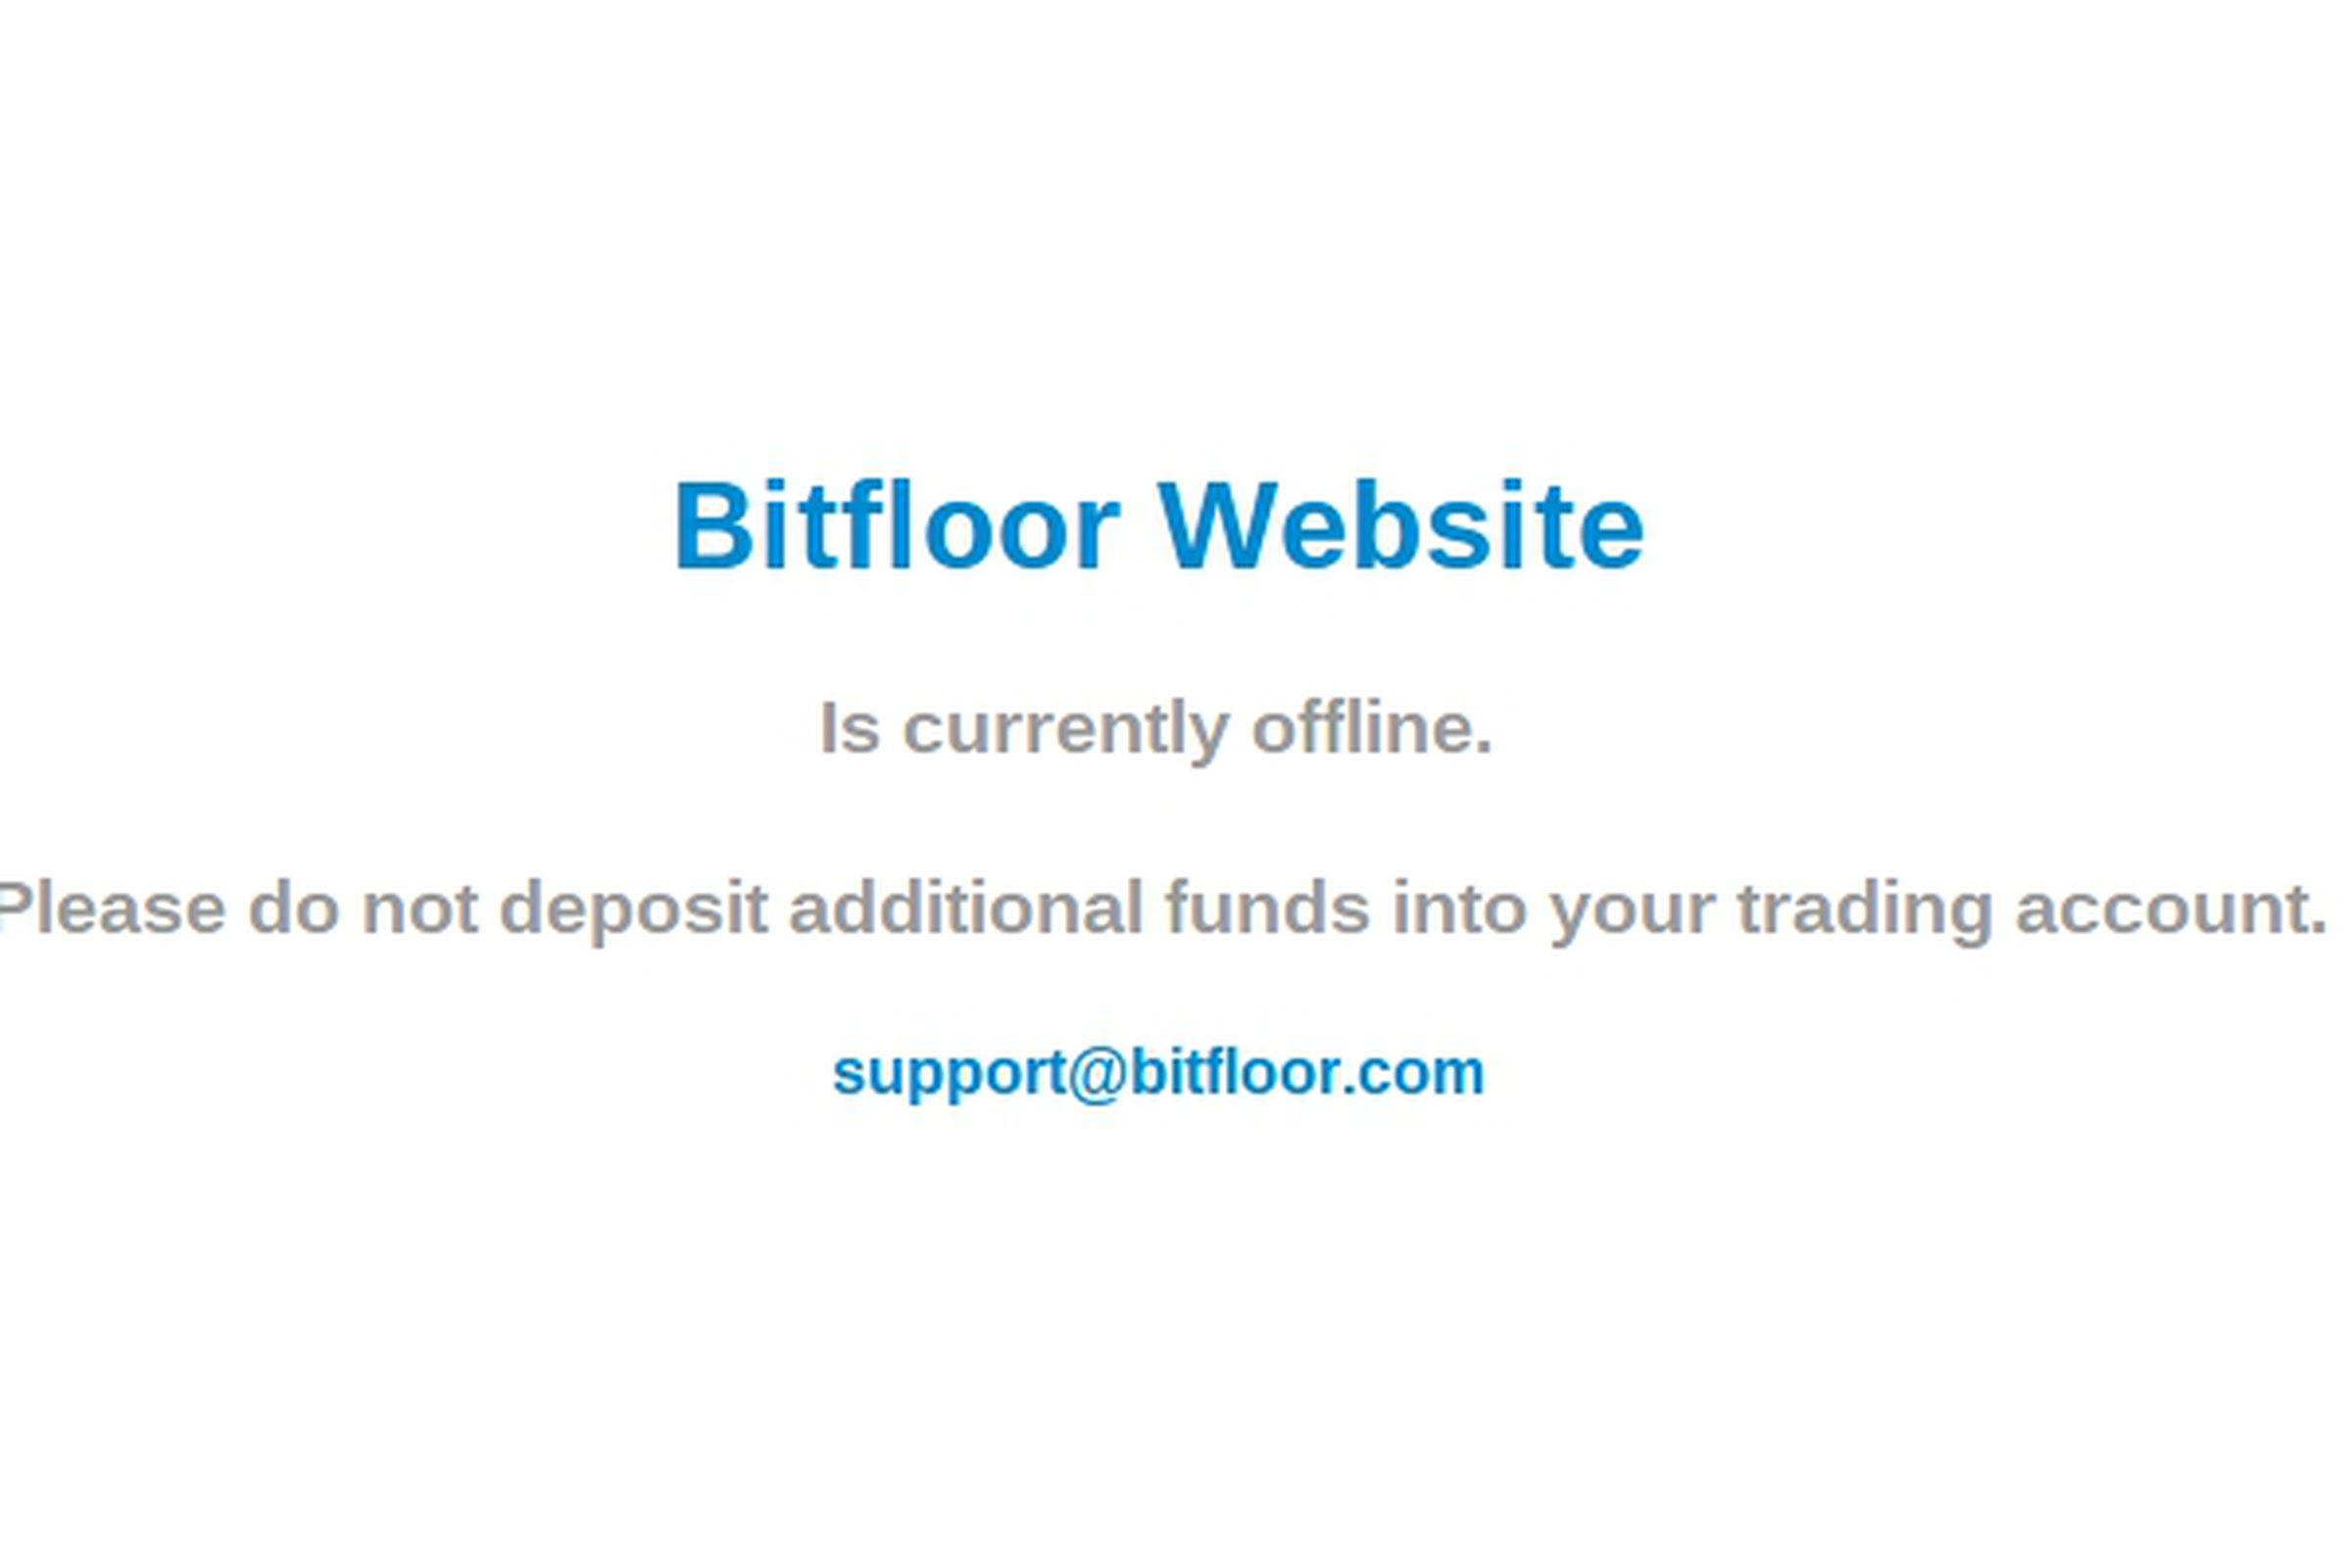 Bitfloor downtime message